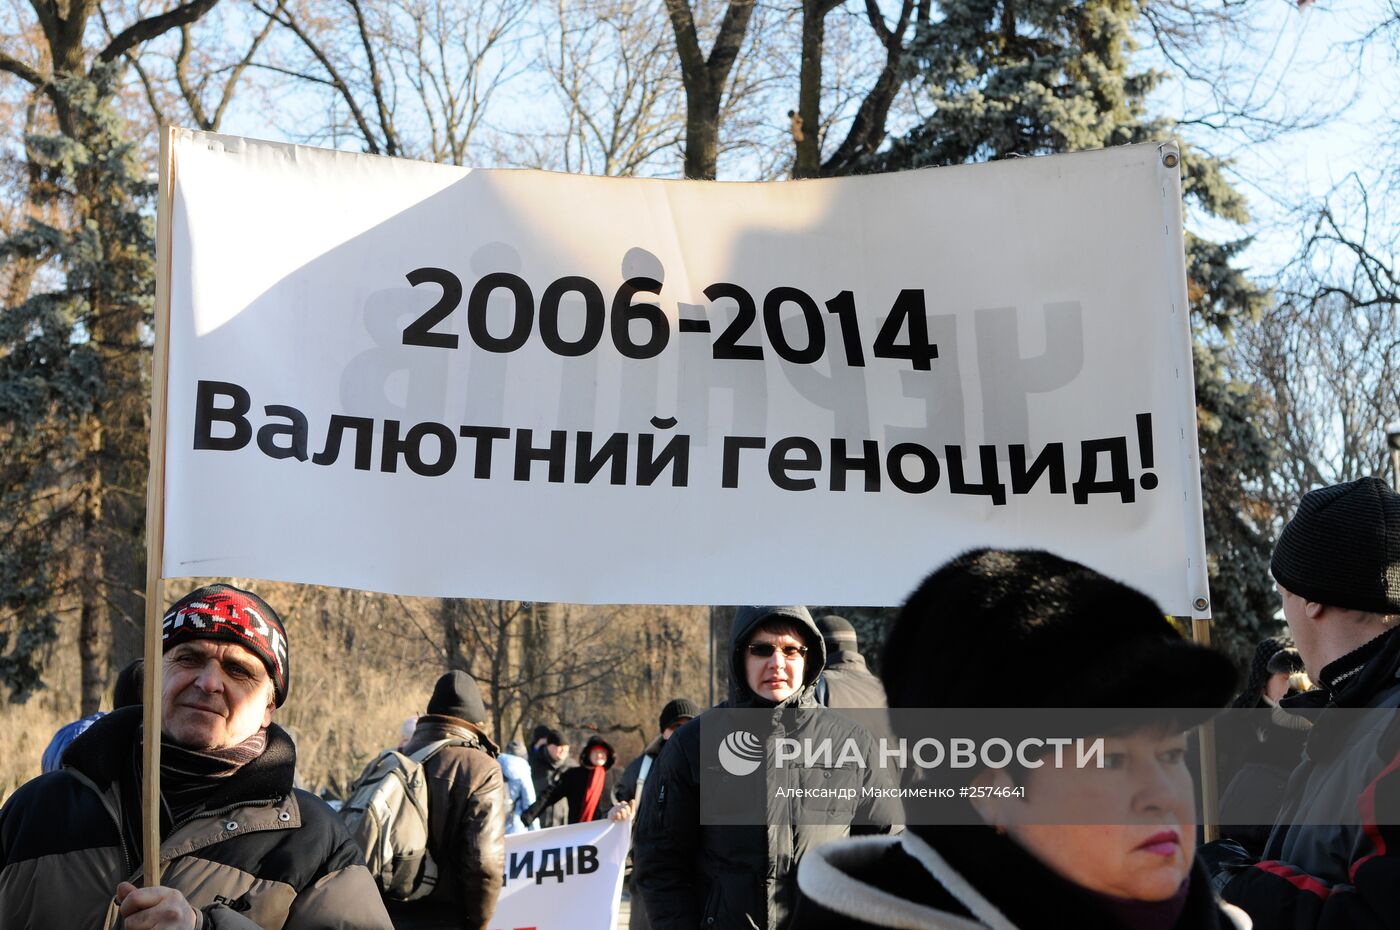 Митинг под лозунгом "Нет! Коррупции в банковской сфере Украины!" в Киеве